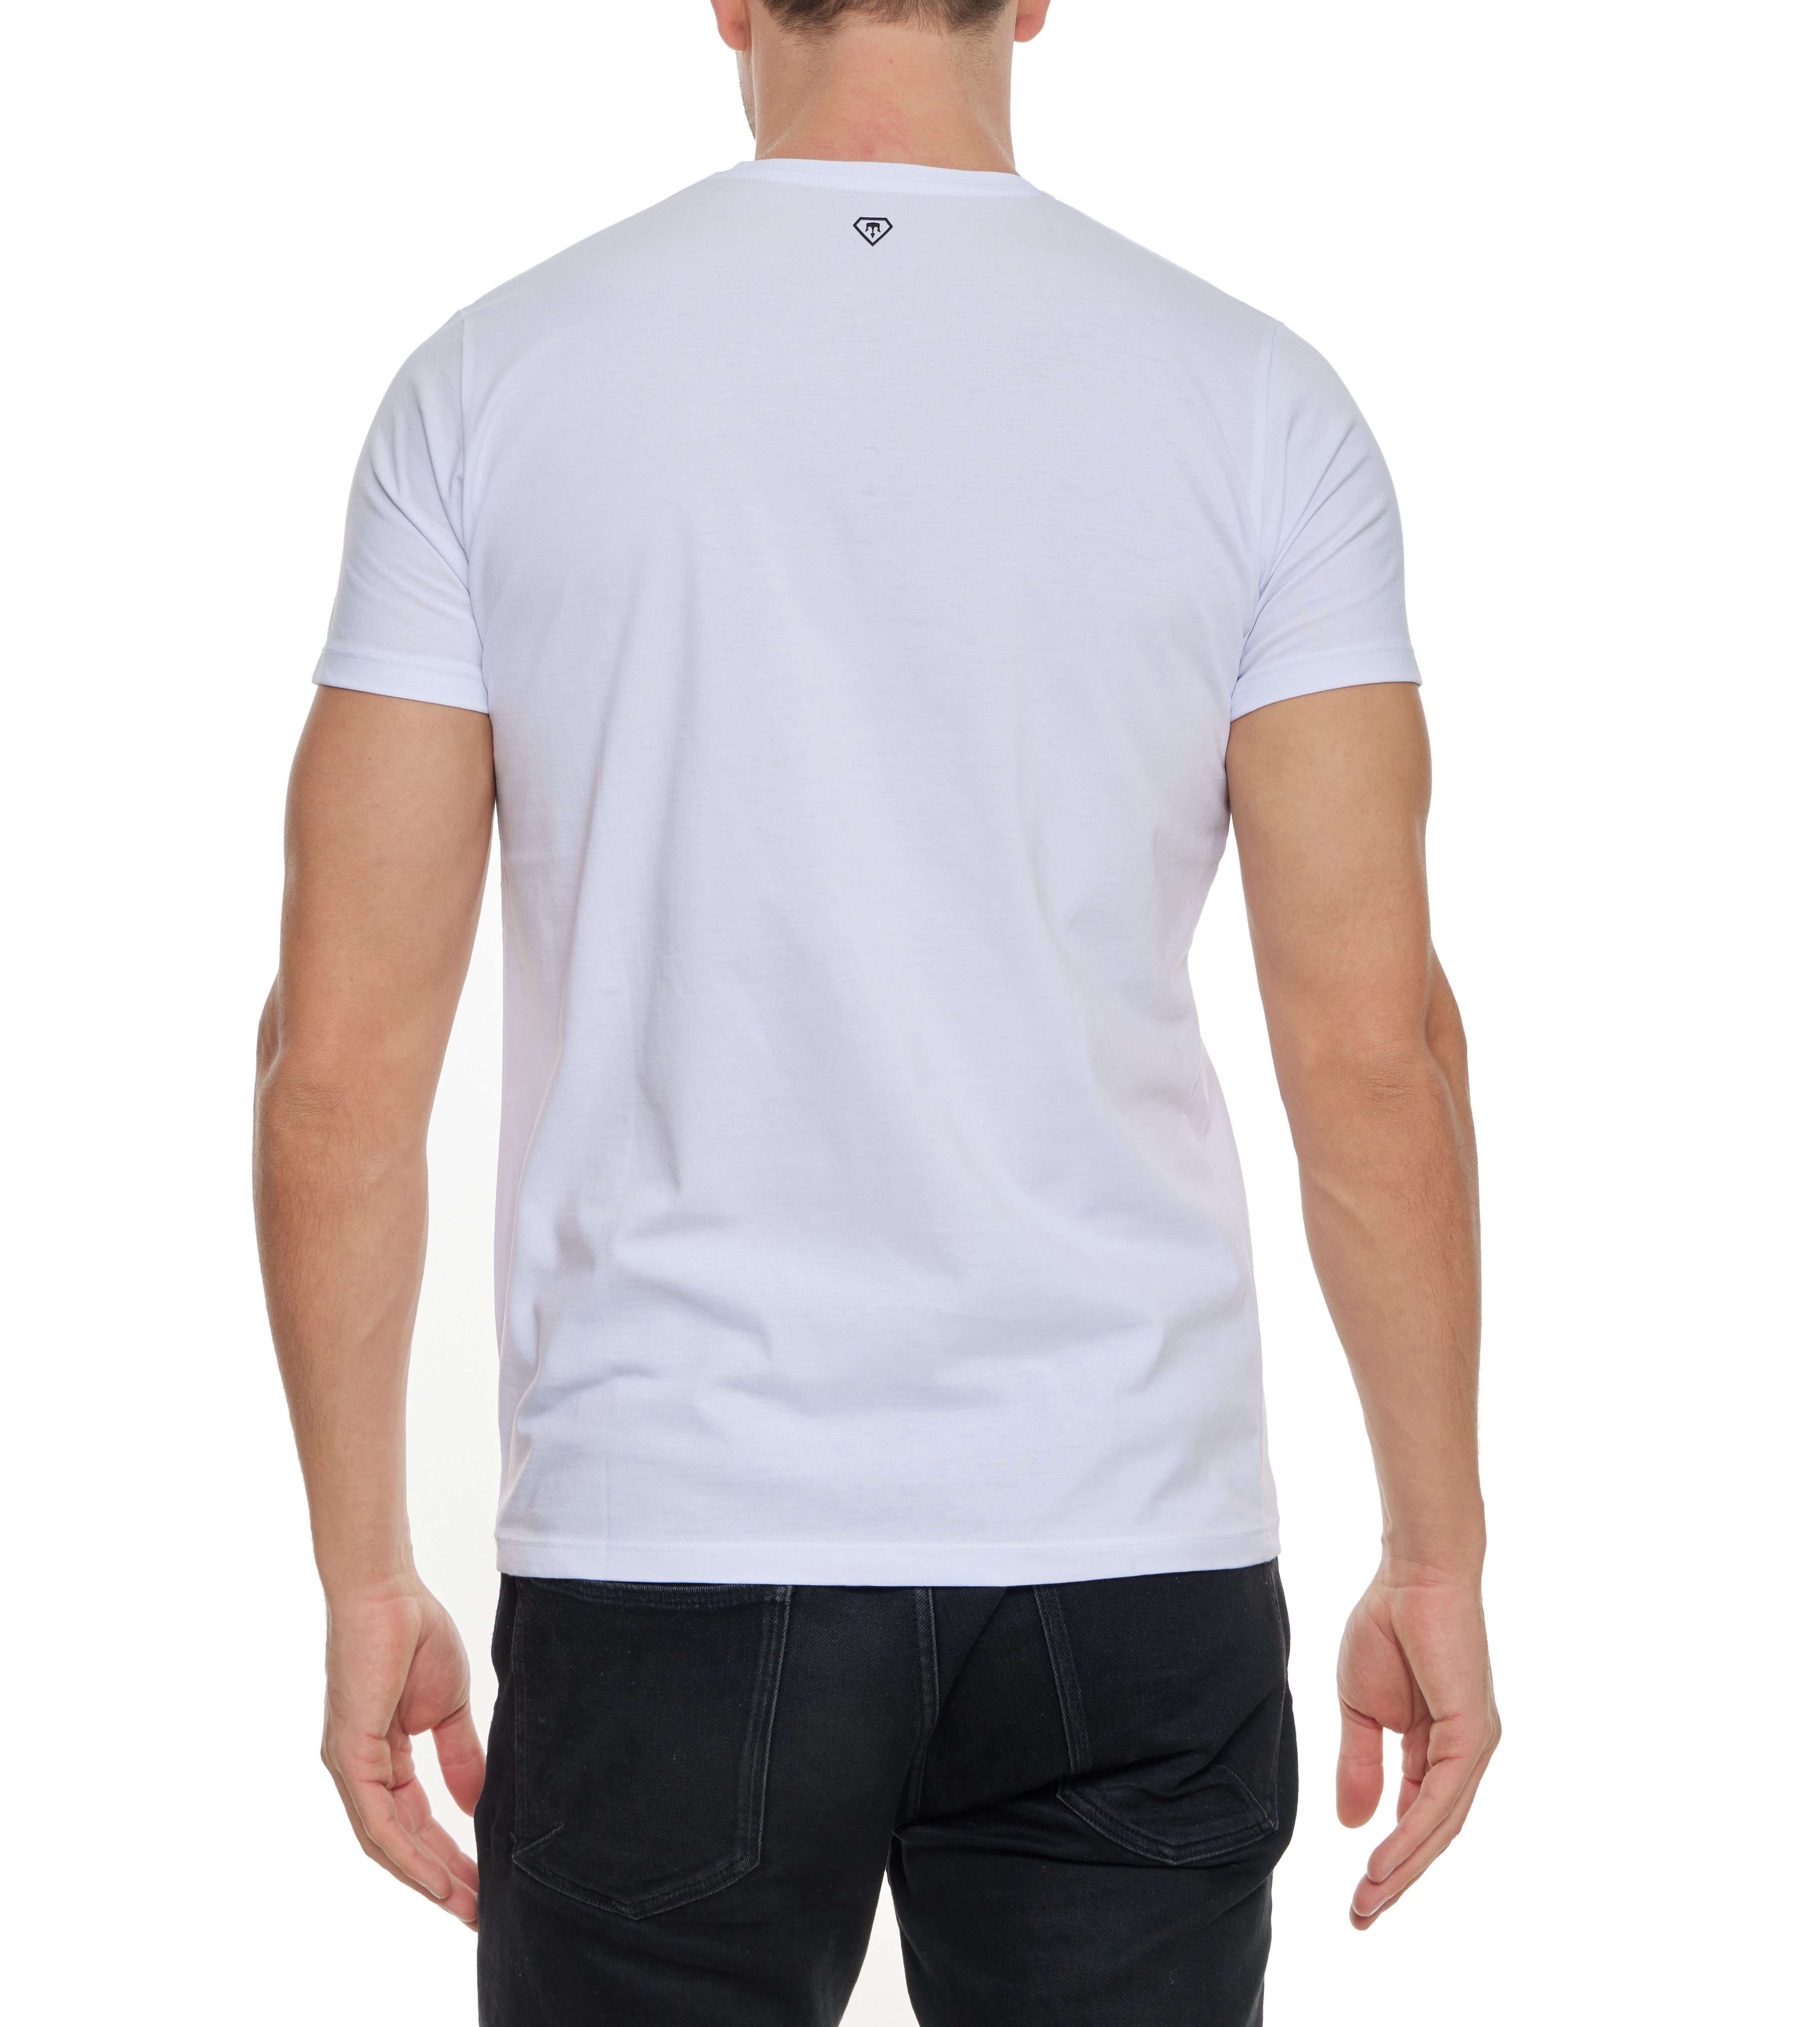 TRUENO Totenkopf mit T-Shirt Herren T-Shirt von Weiß TRUENO Strass